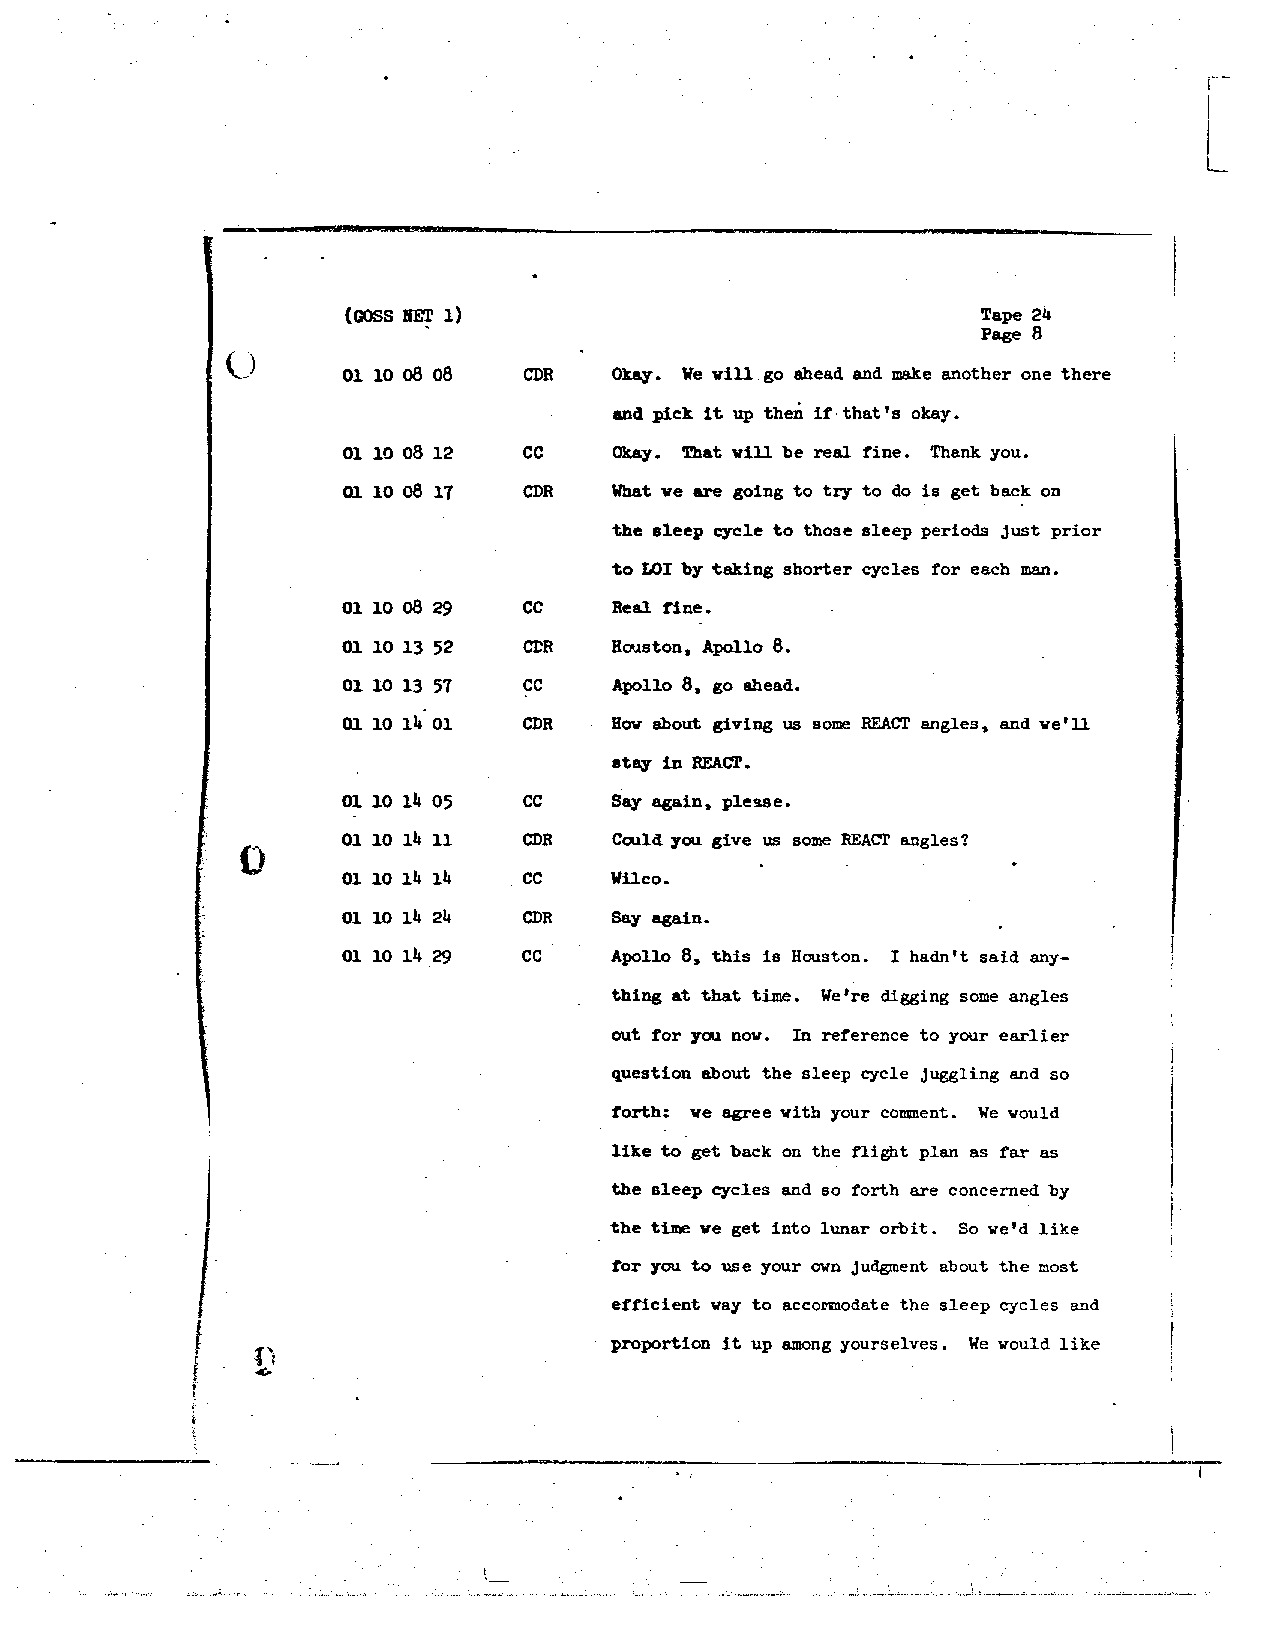 Page 193 of Apollo 8’s original transcript